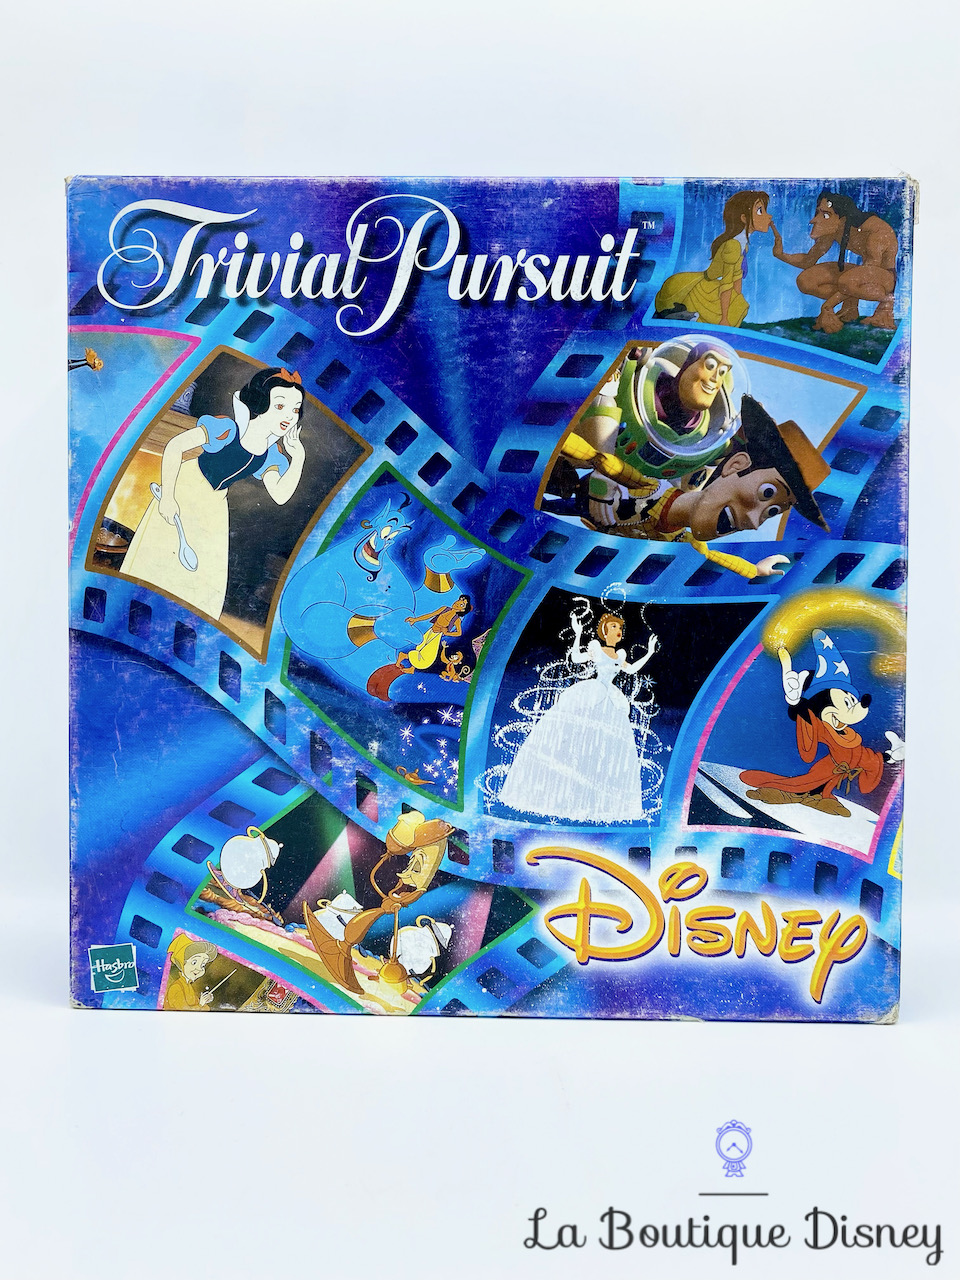 Hasbro Trivial Pursuit Disney Famille - Jeu de culture générale